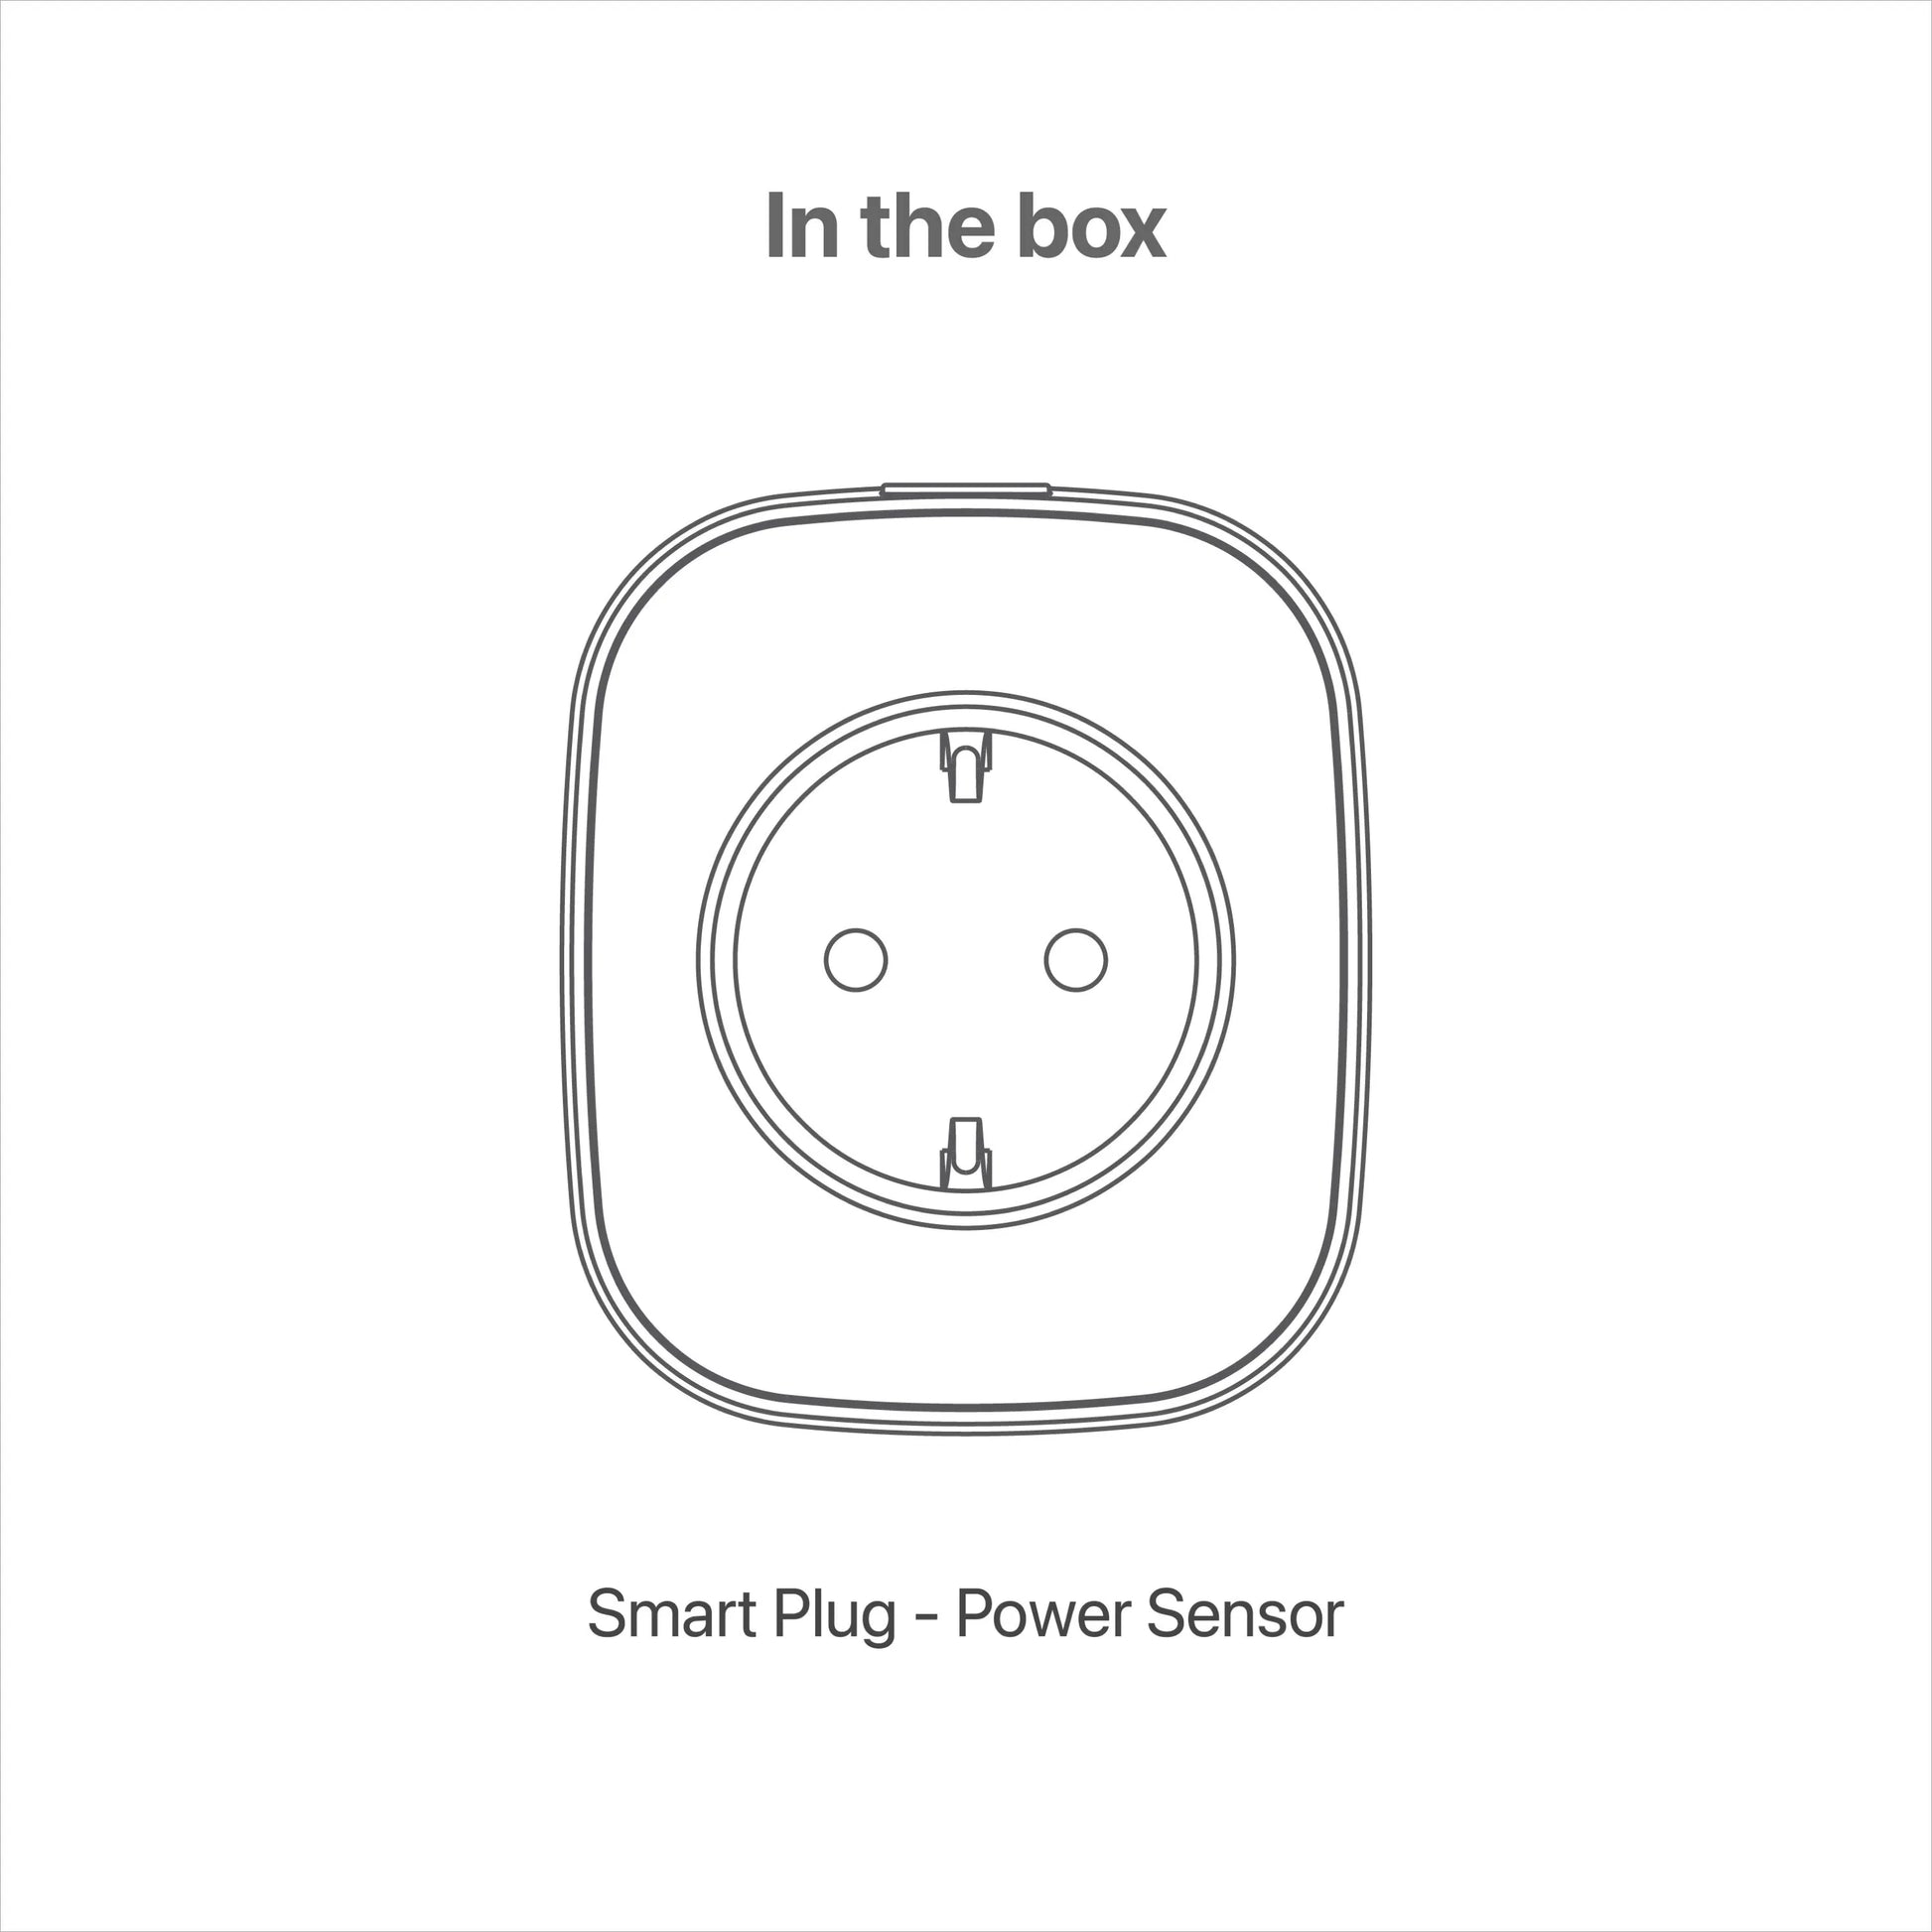 smart plug in the box